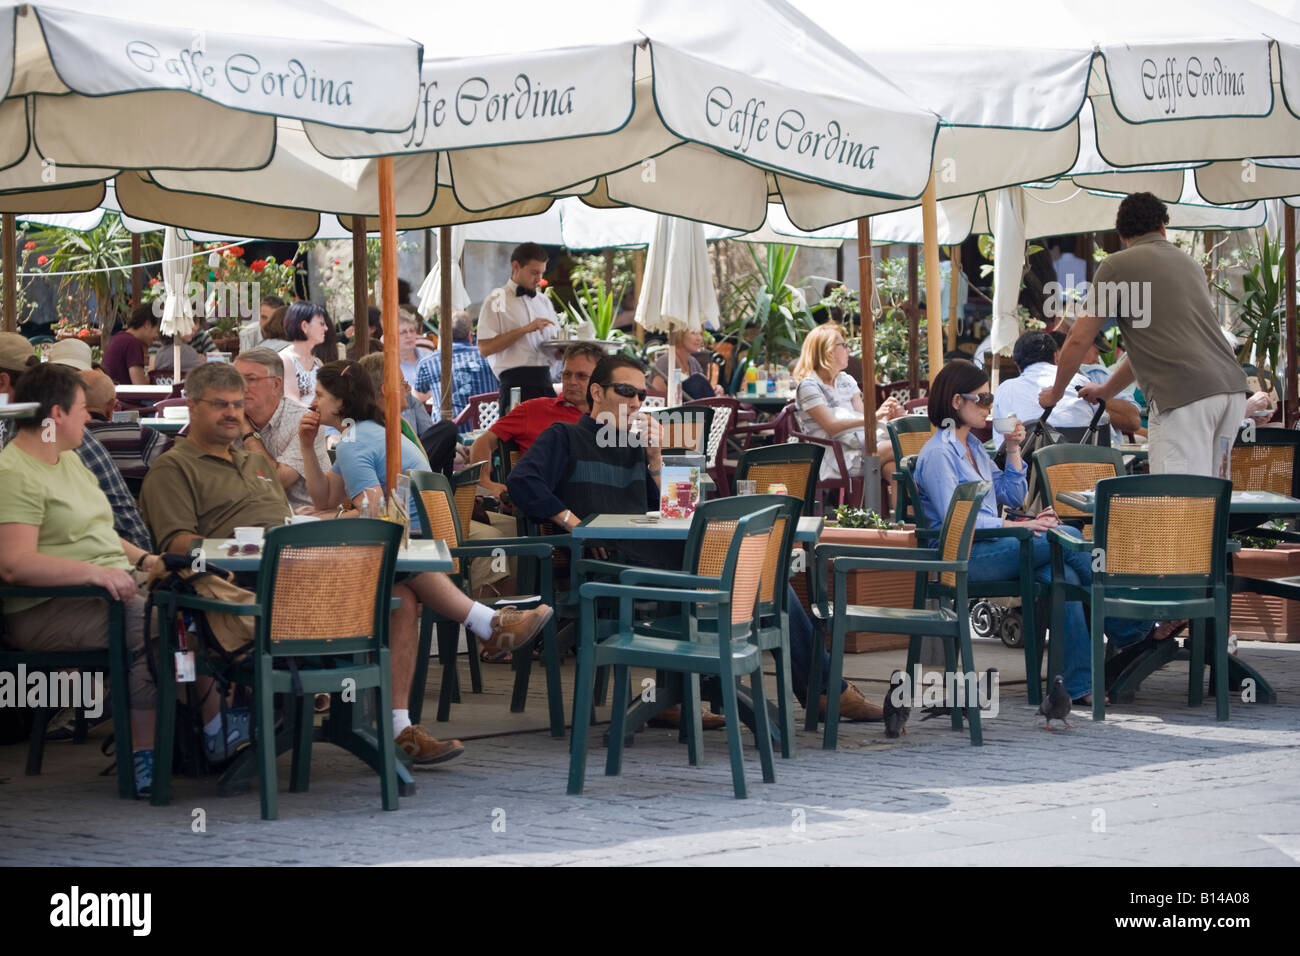 Cafe Cordina Valletta Malta Stock Photo